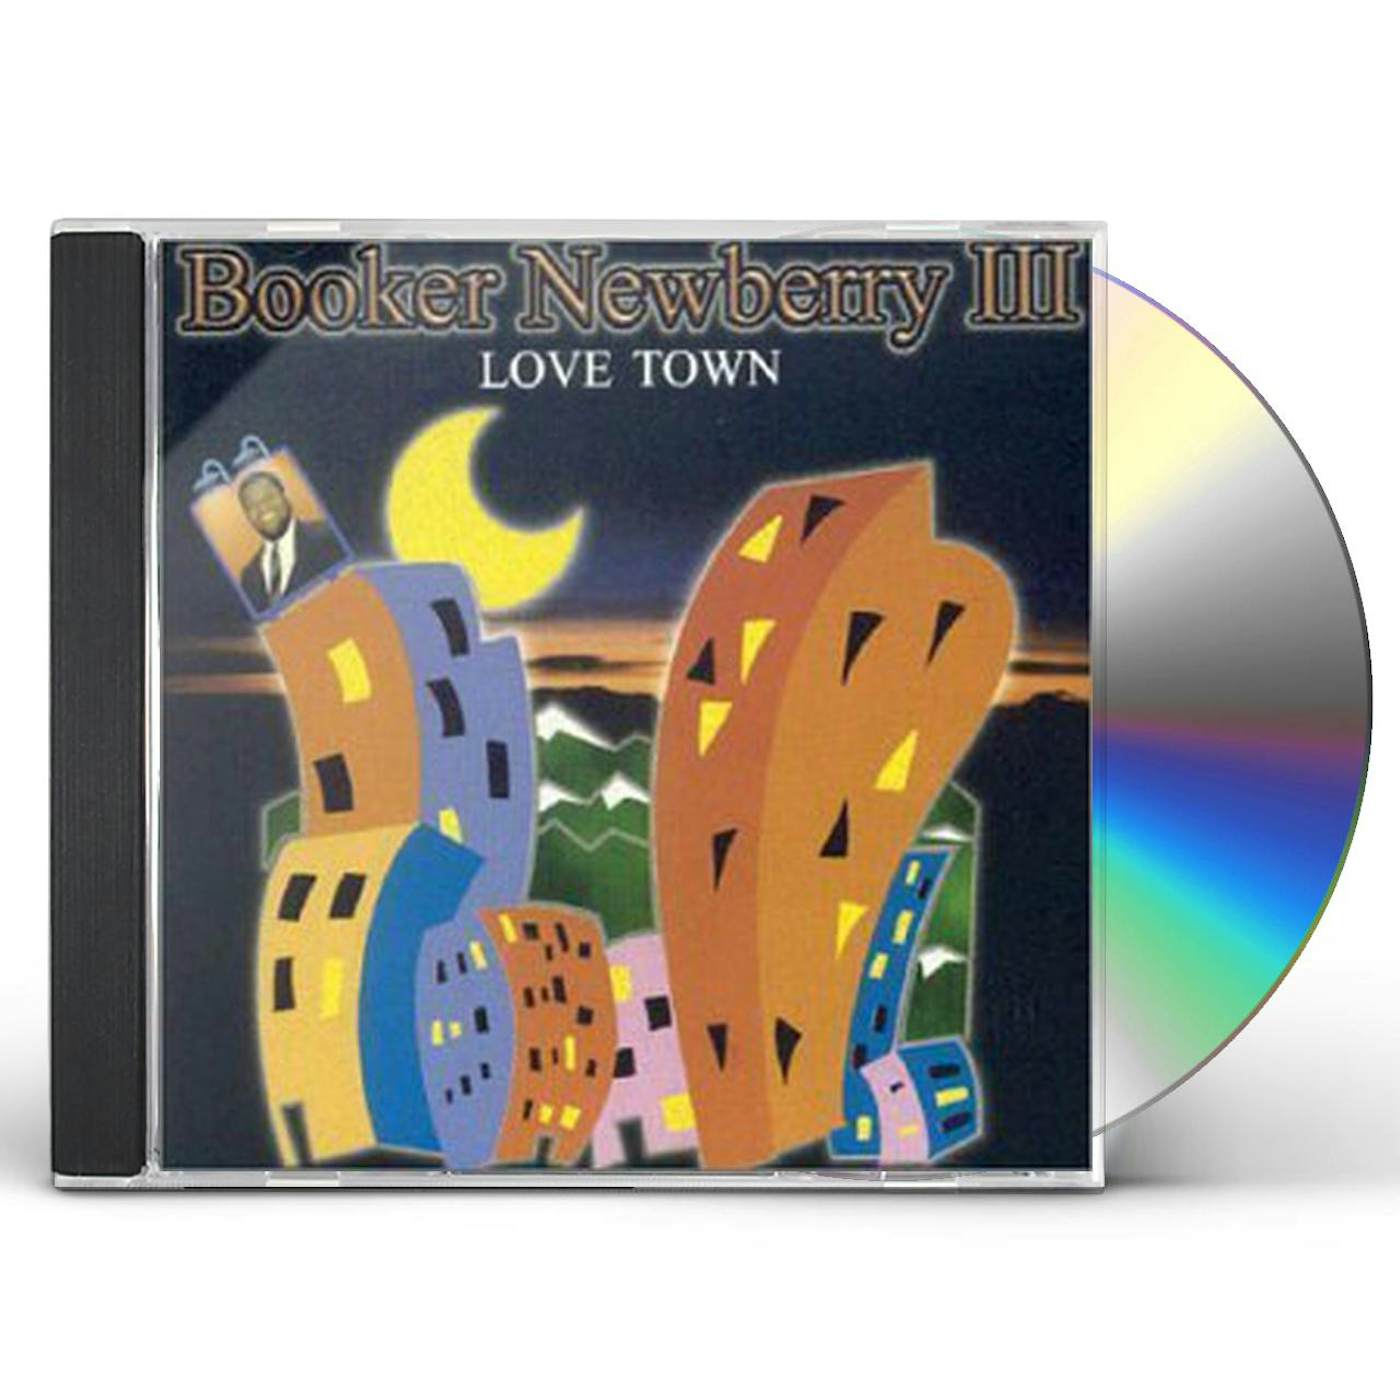 Booker Newberry III LOVE TOWN CD